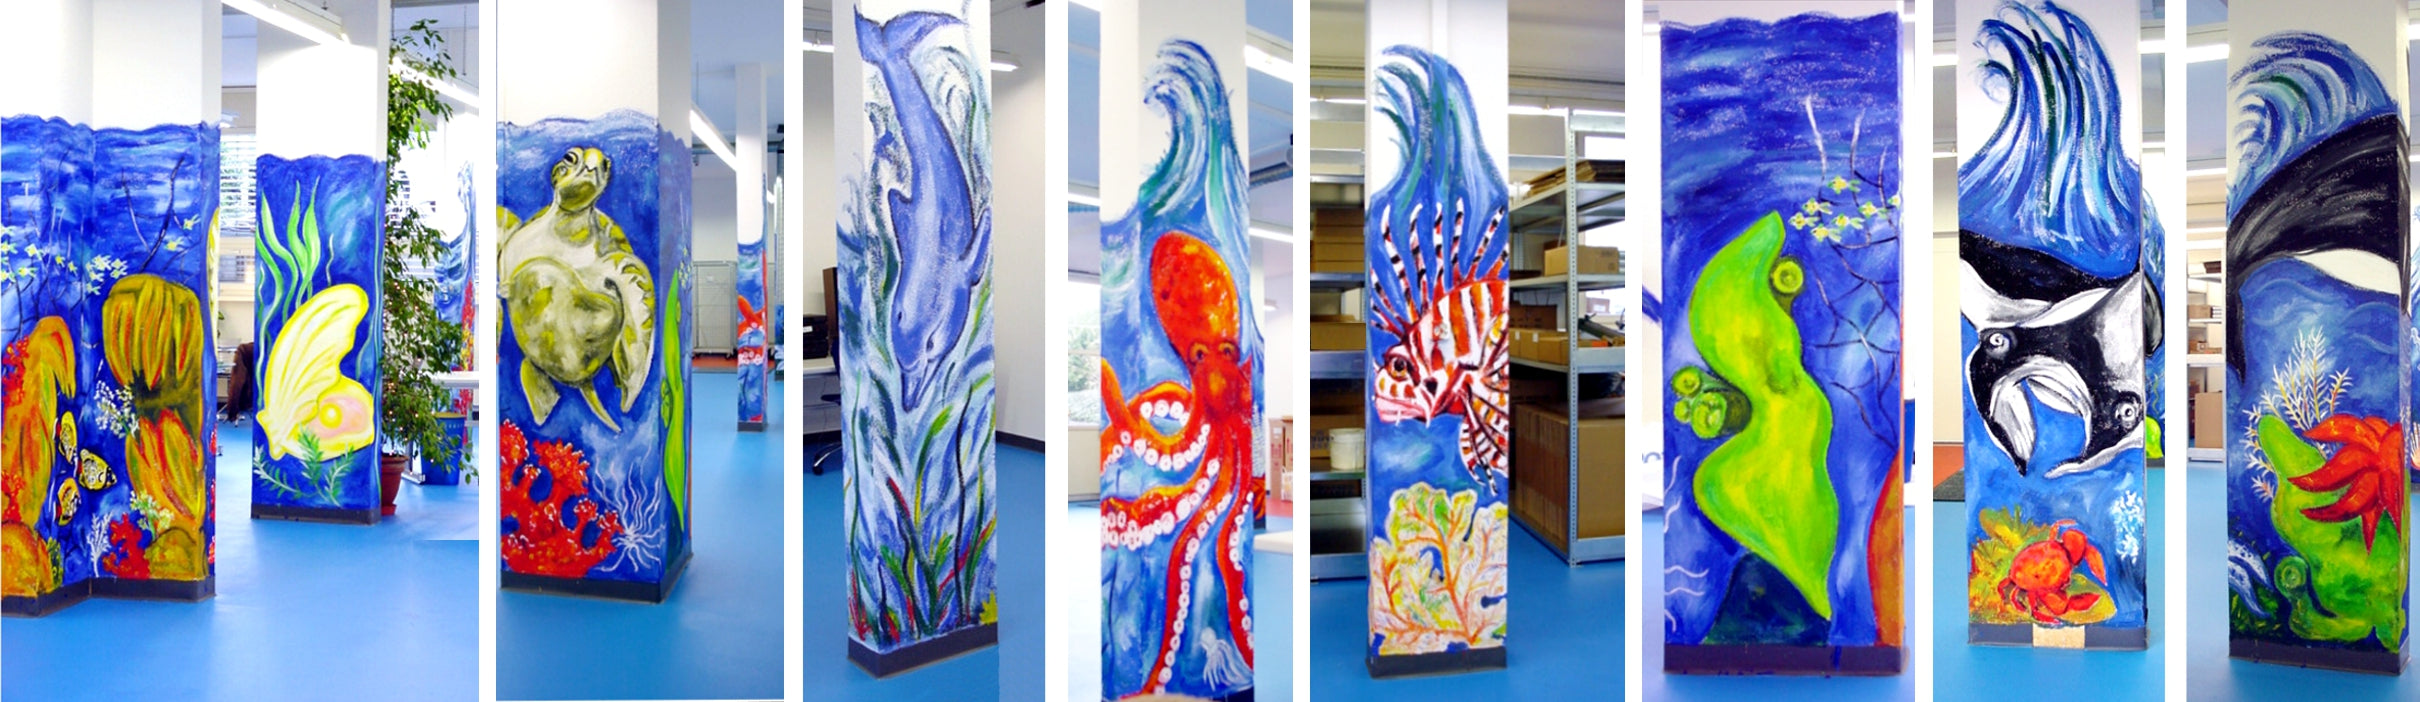 AquaClic-Aquarium in Zürich-Oerlikon mit künstlerisch gestalteten Säulen